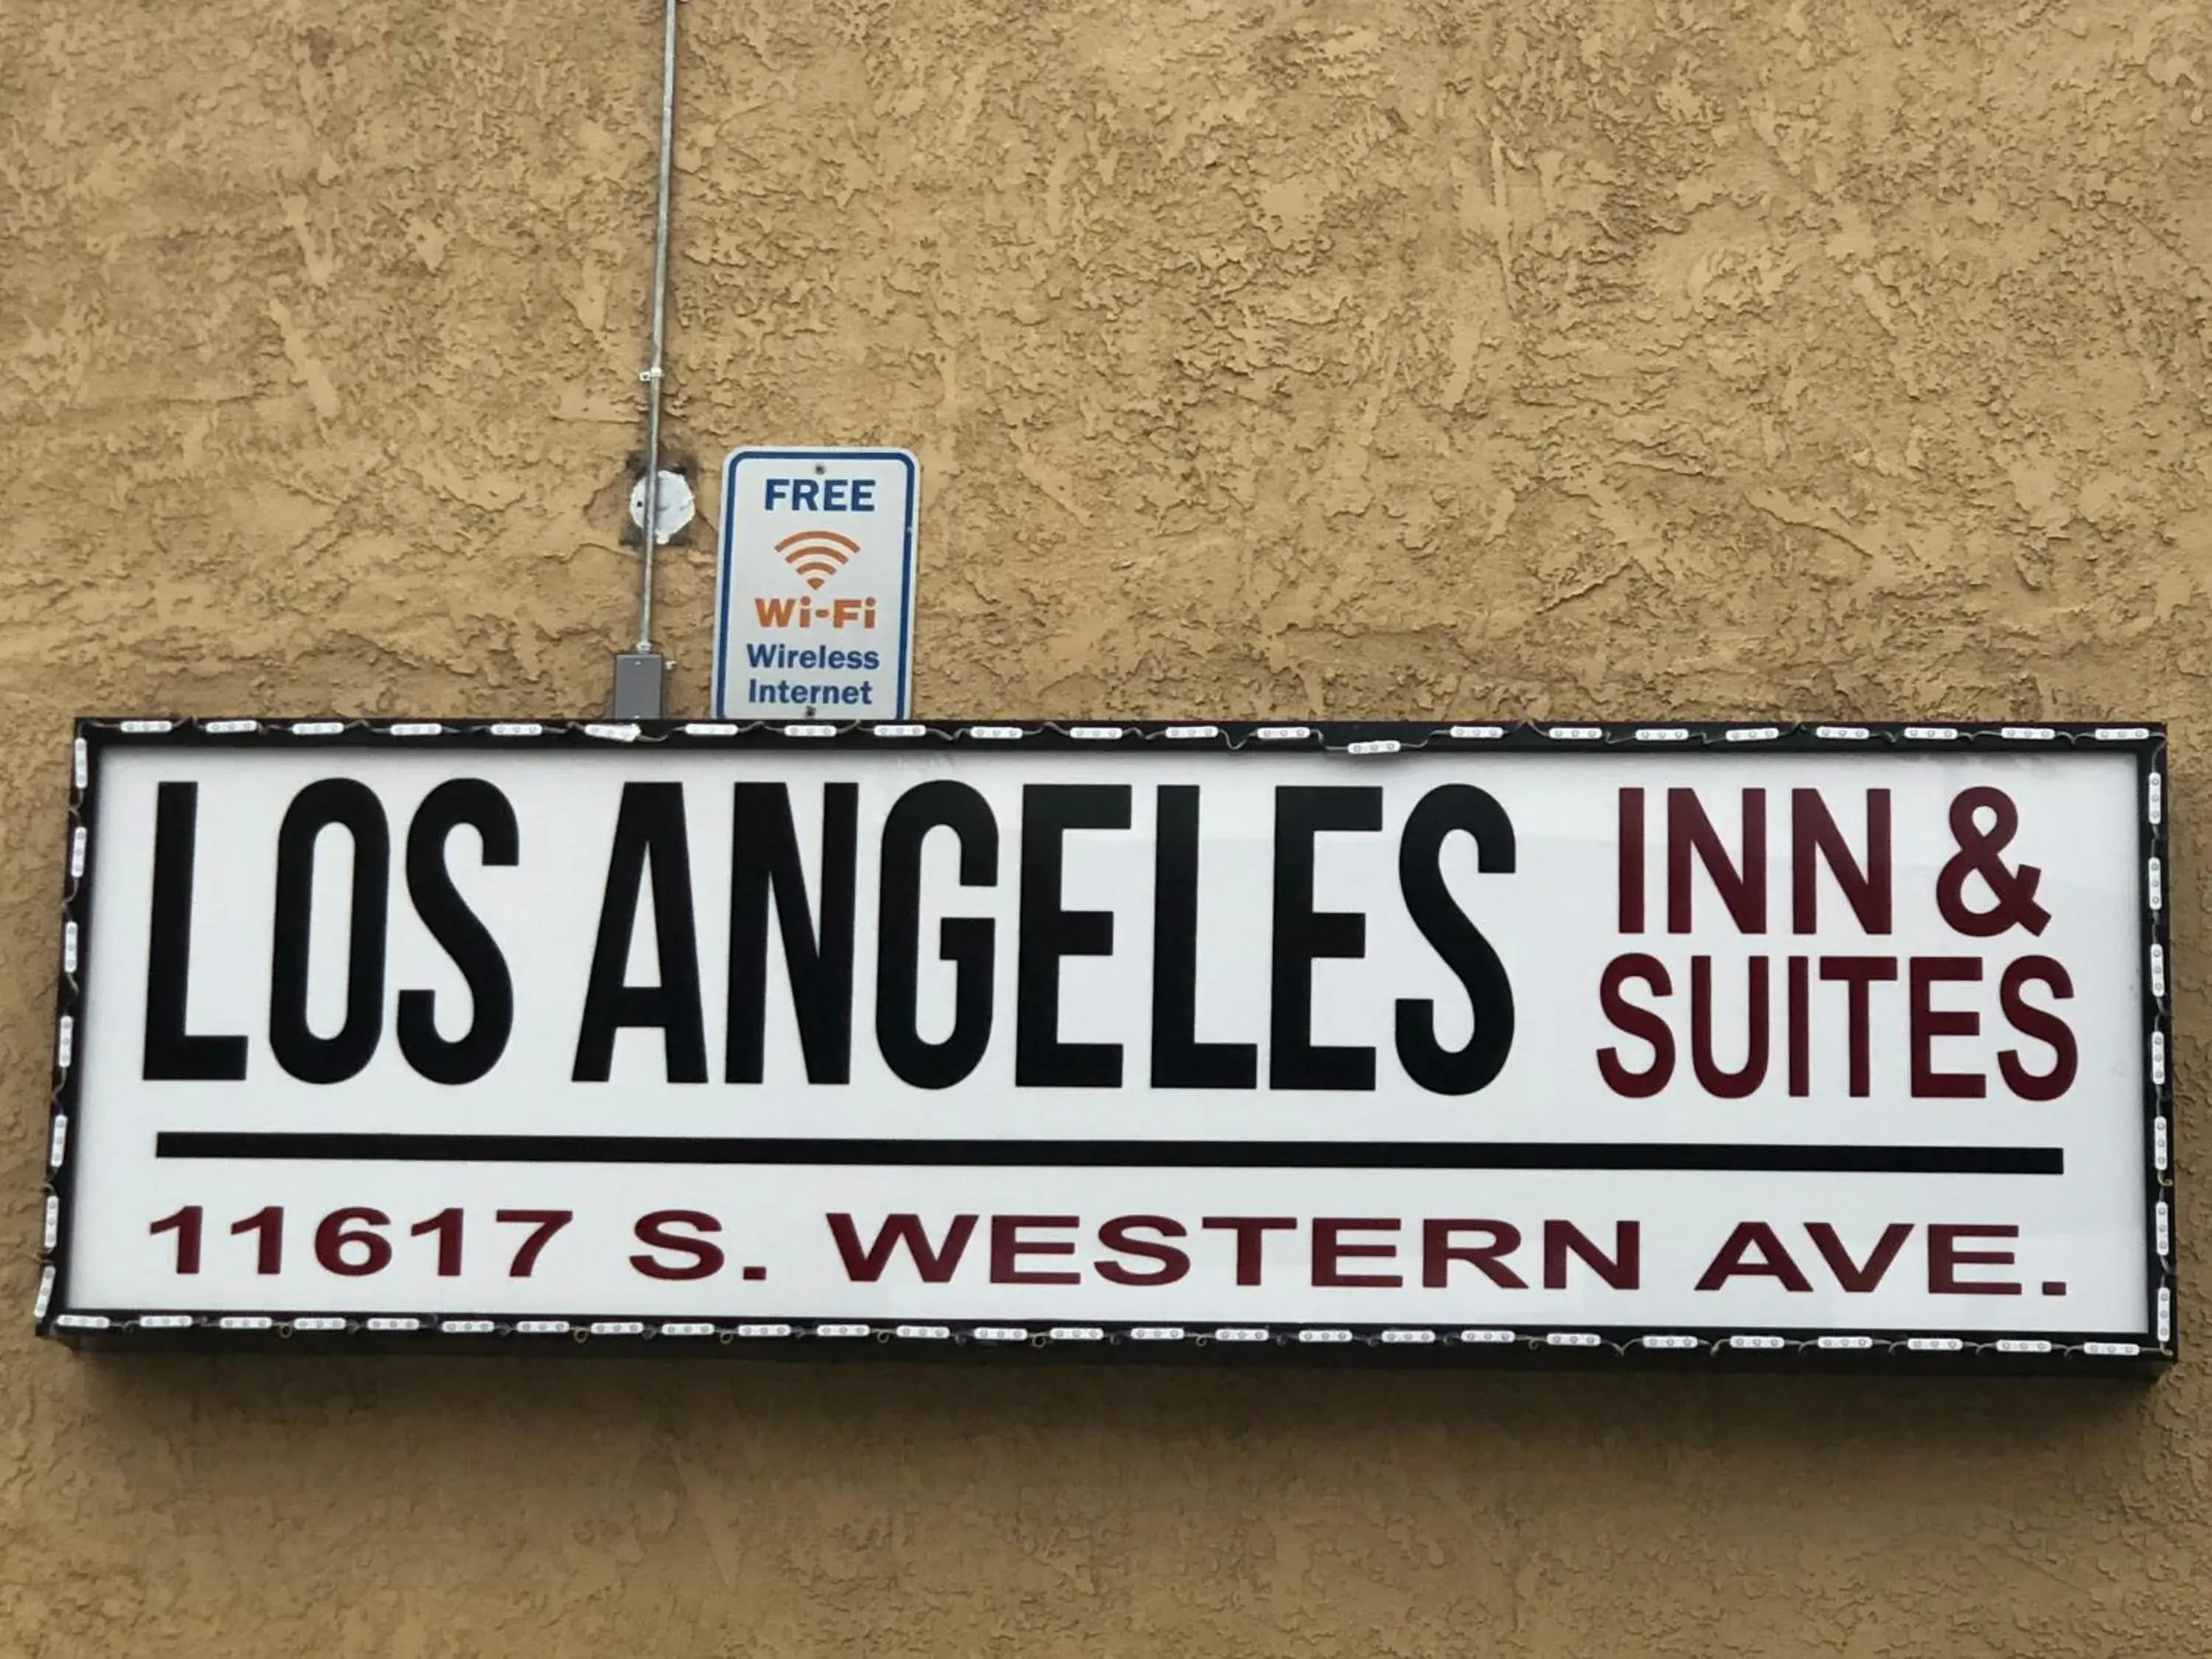 Los Angeles Inn & Suites - LAX